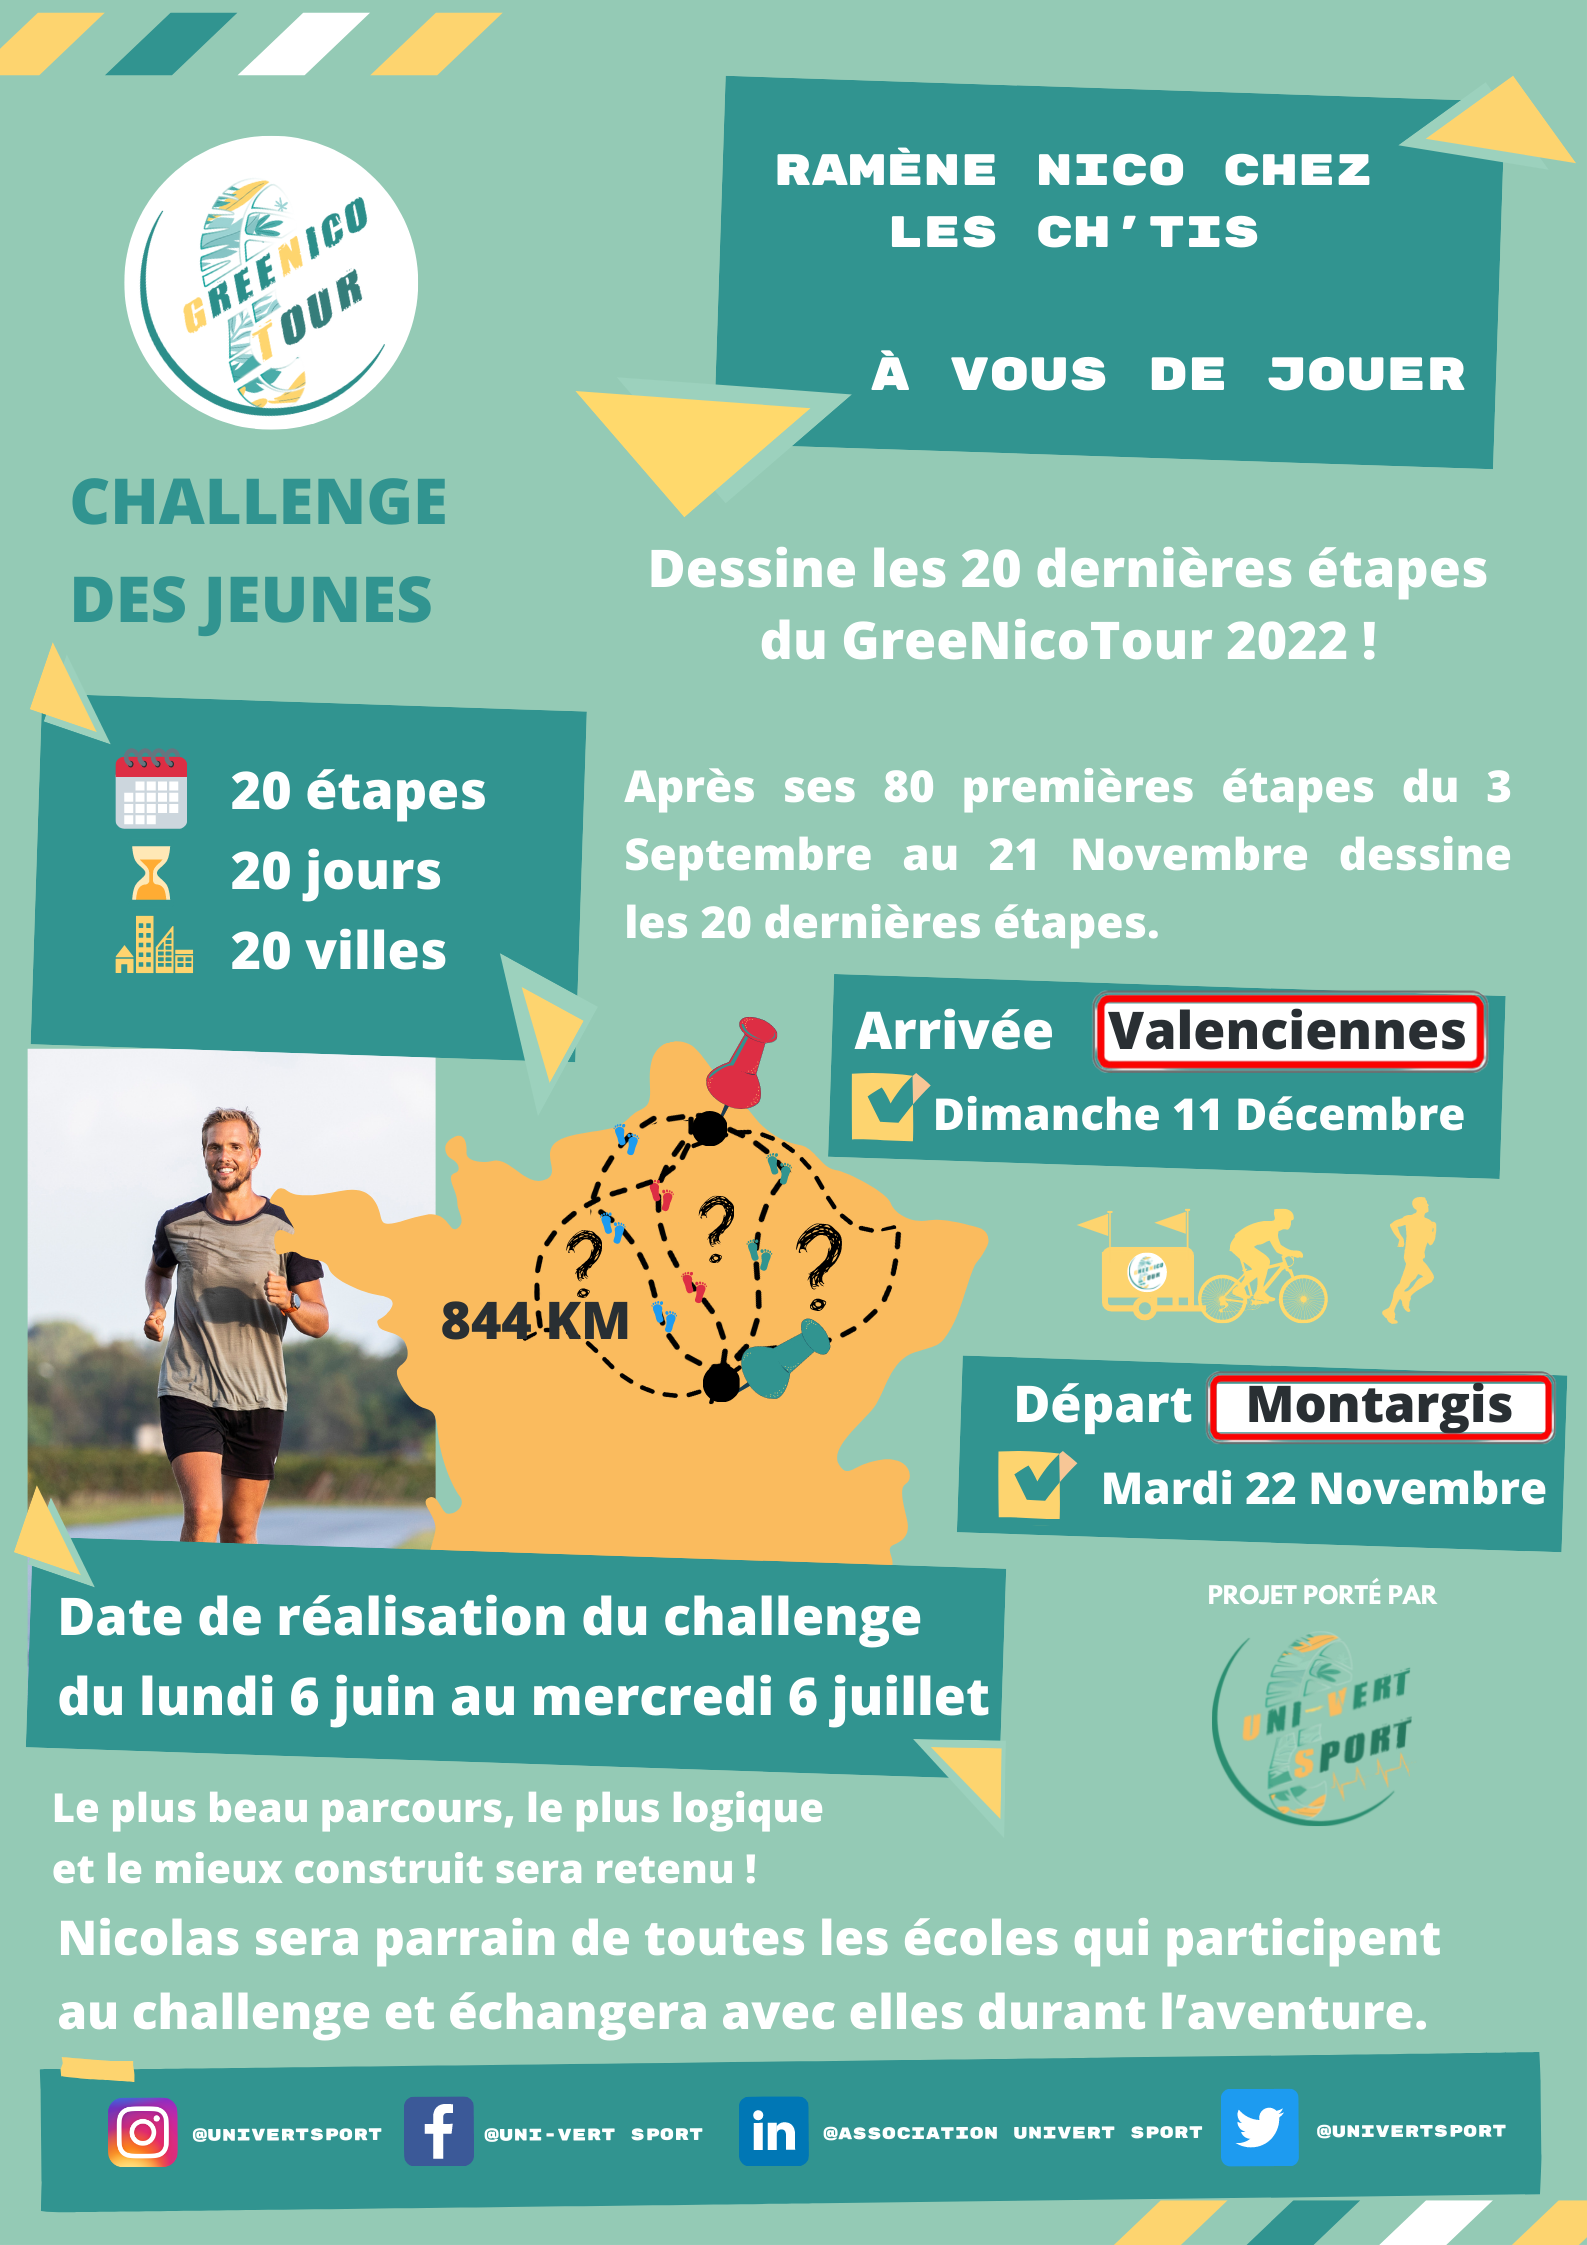 GreeNicoTour 2022 Ramène Nico chez les ch’tis / Challenge DES JEUNES